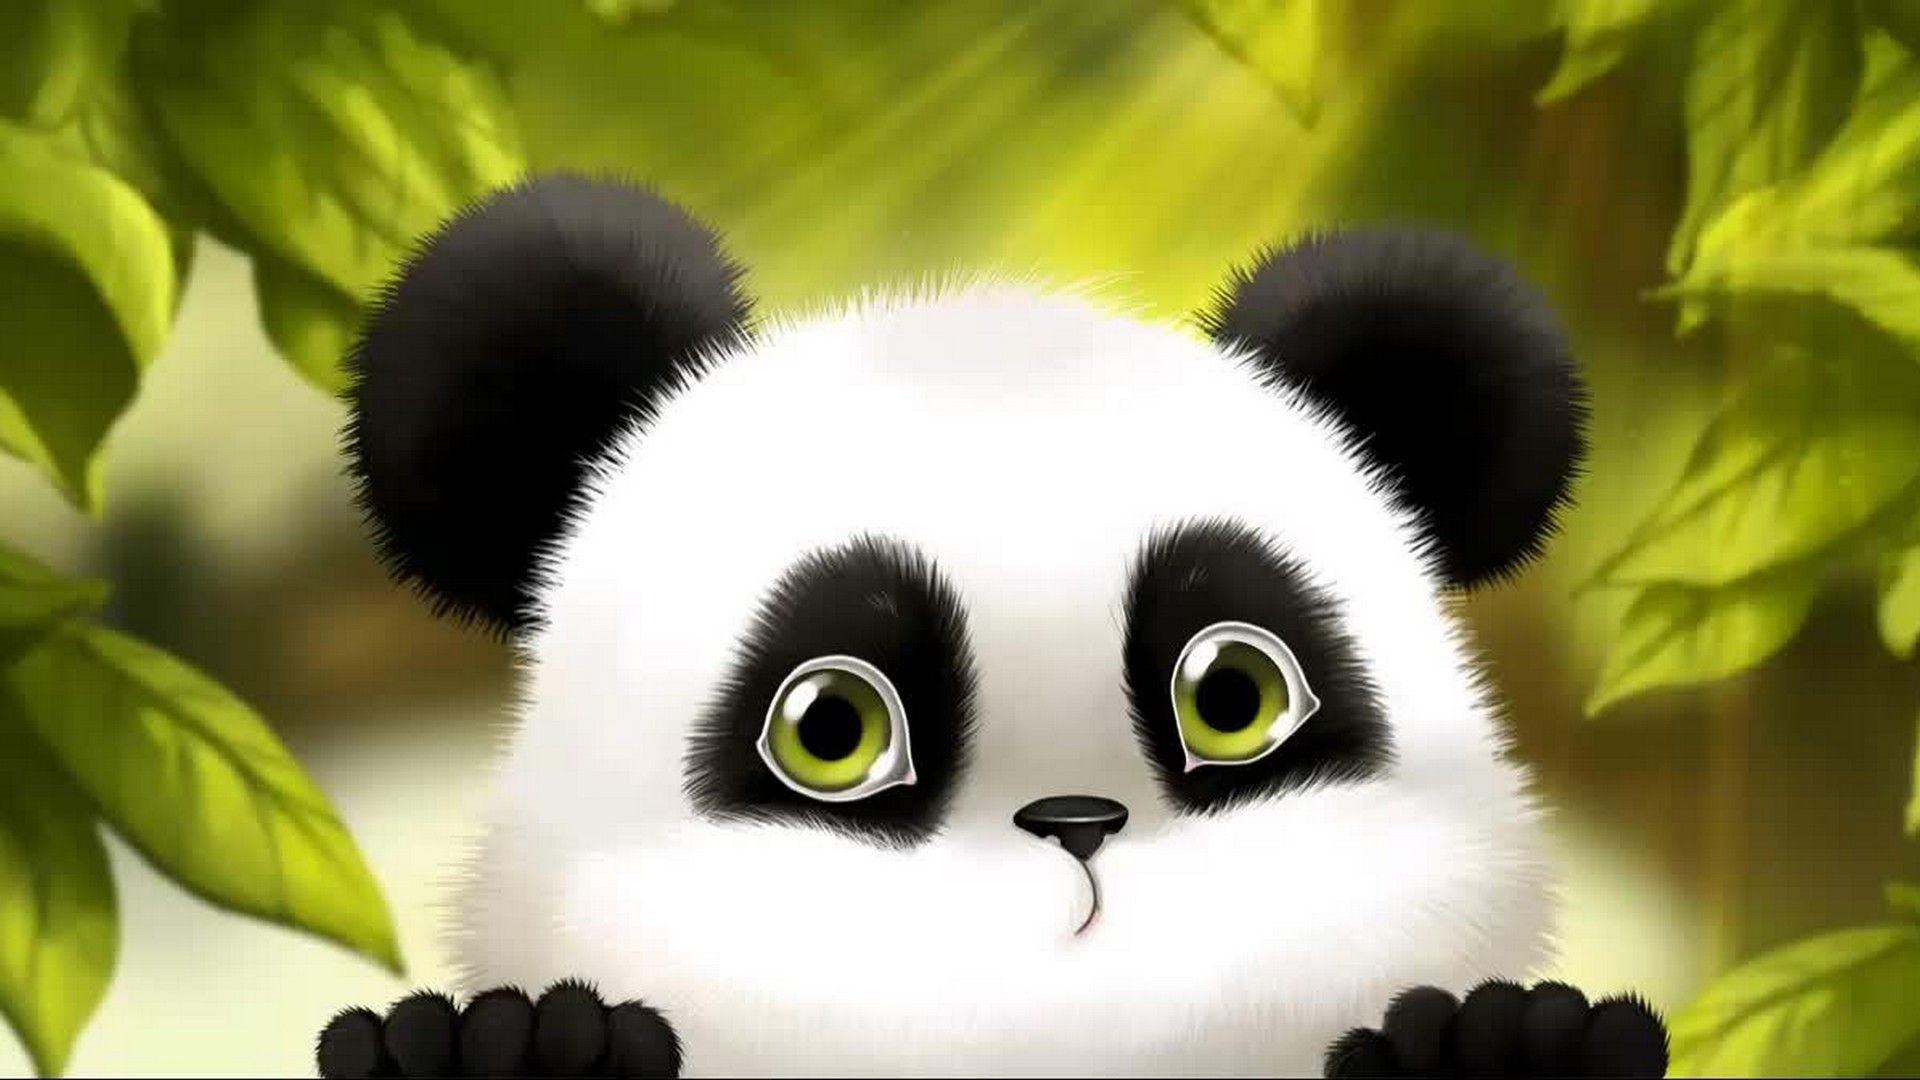 Cute Baby Panda Cartoon Wallpaper - Cute Panda Wallpaper Hd - HD Wallpaper 